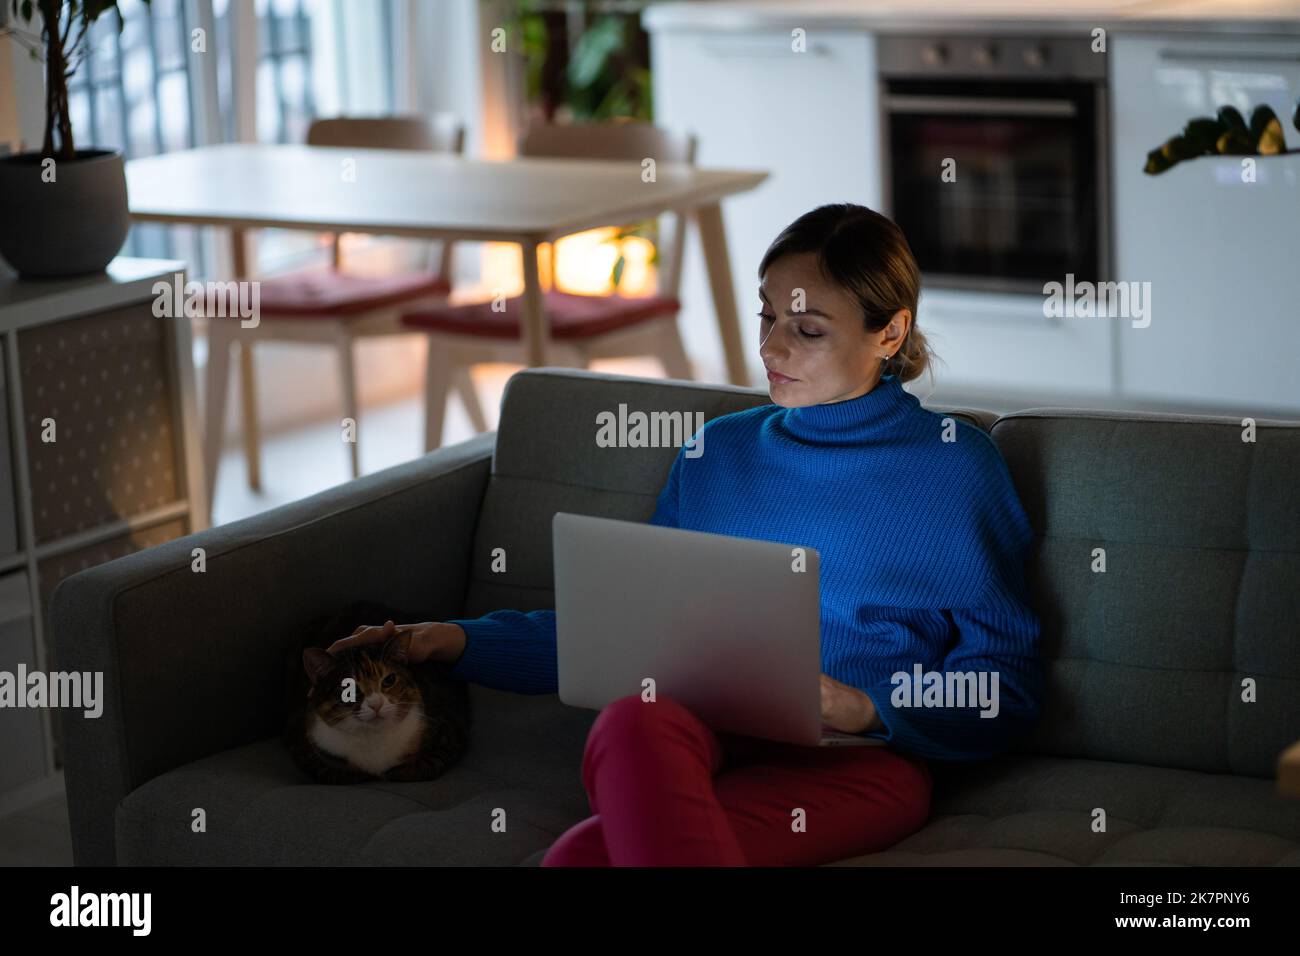 Gentile donna caucasica accarezzare gatto distratto dal lavoro freelance con laptop in grembo si siede sul divano Foto Stock